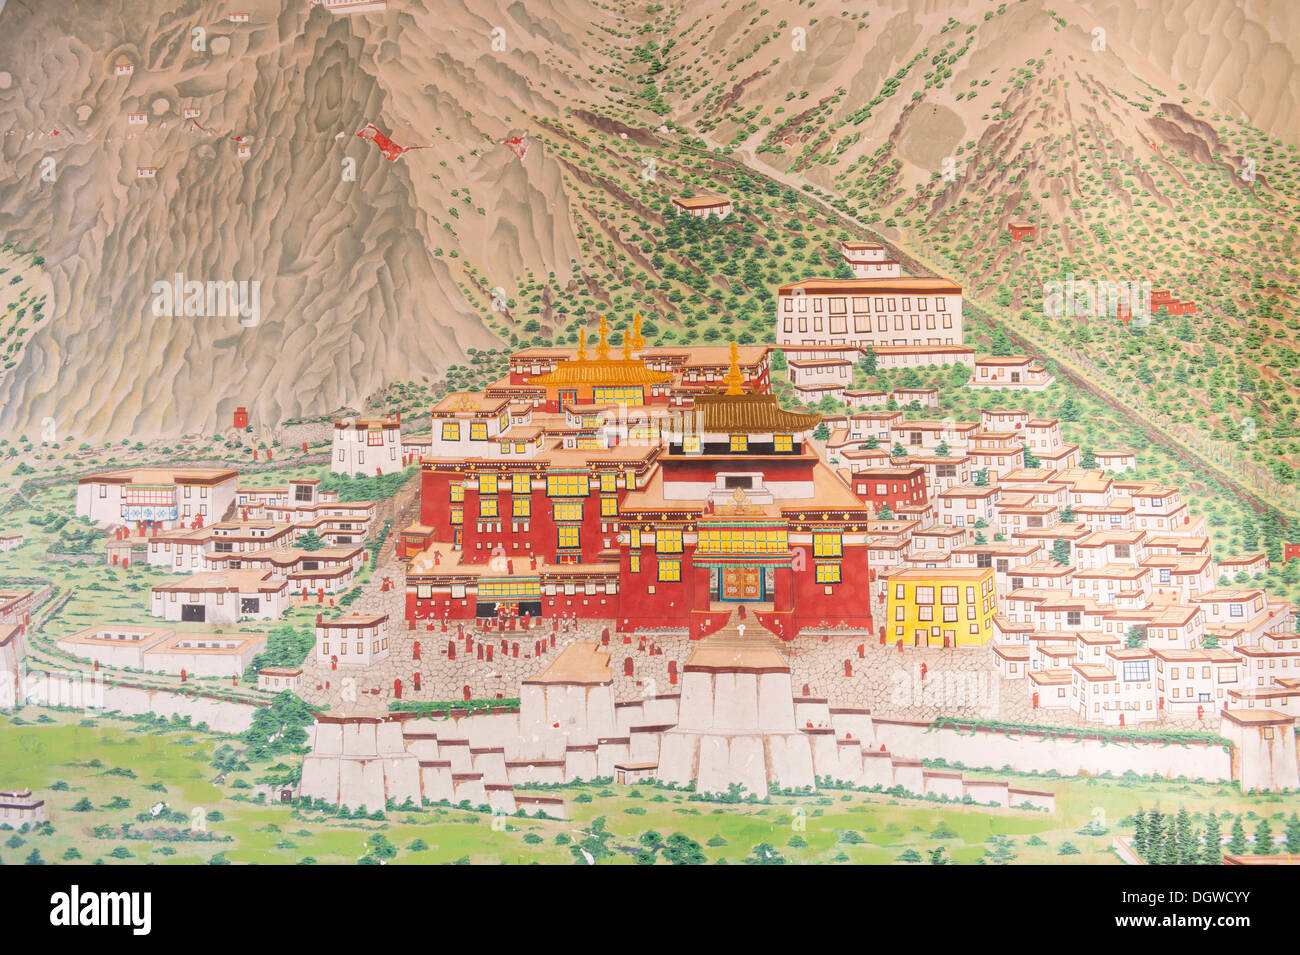 Le bouddhisme tibétain, le monastère principal de la Lignée Karma Kagyu, Tsourphou au Tibet, murale à l'entrée du monastère de Rumtek Banque D'Images